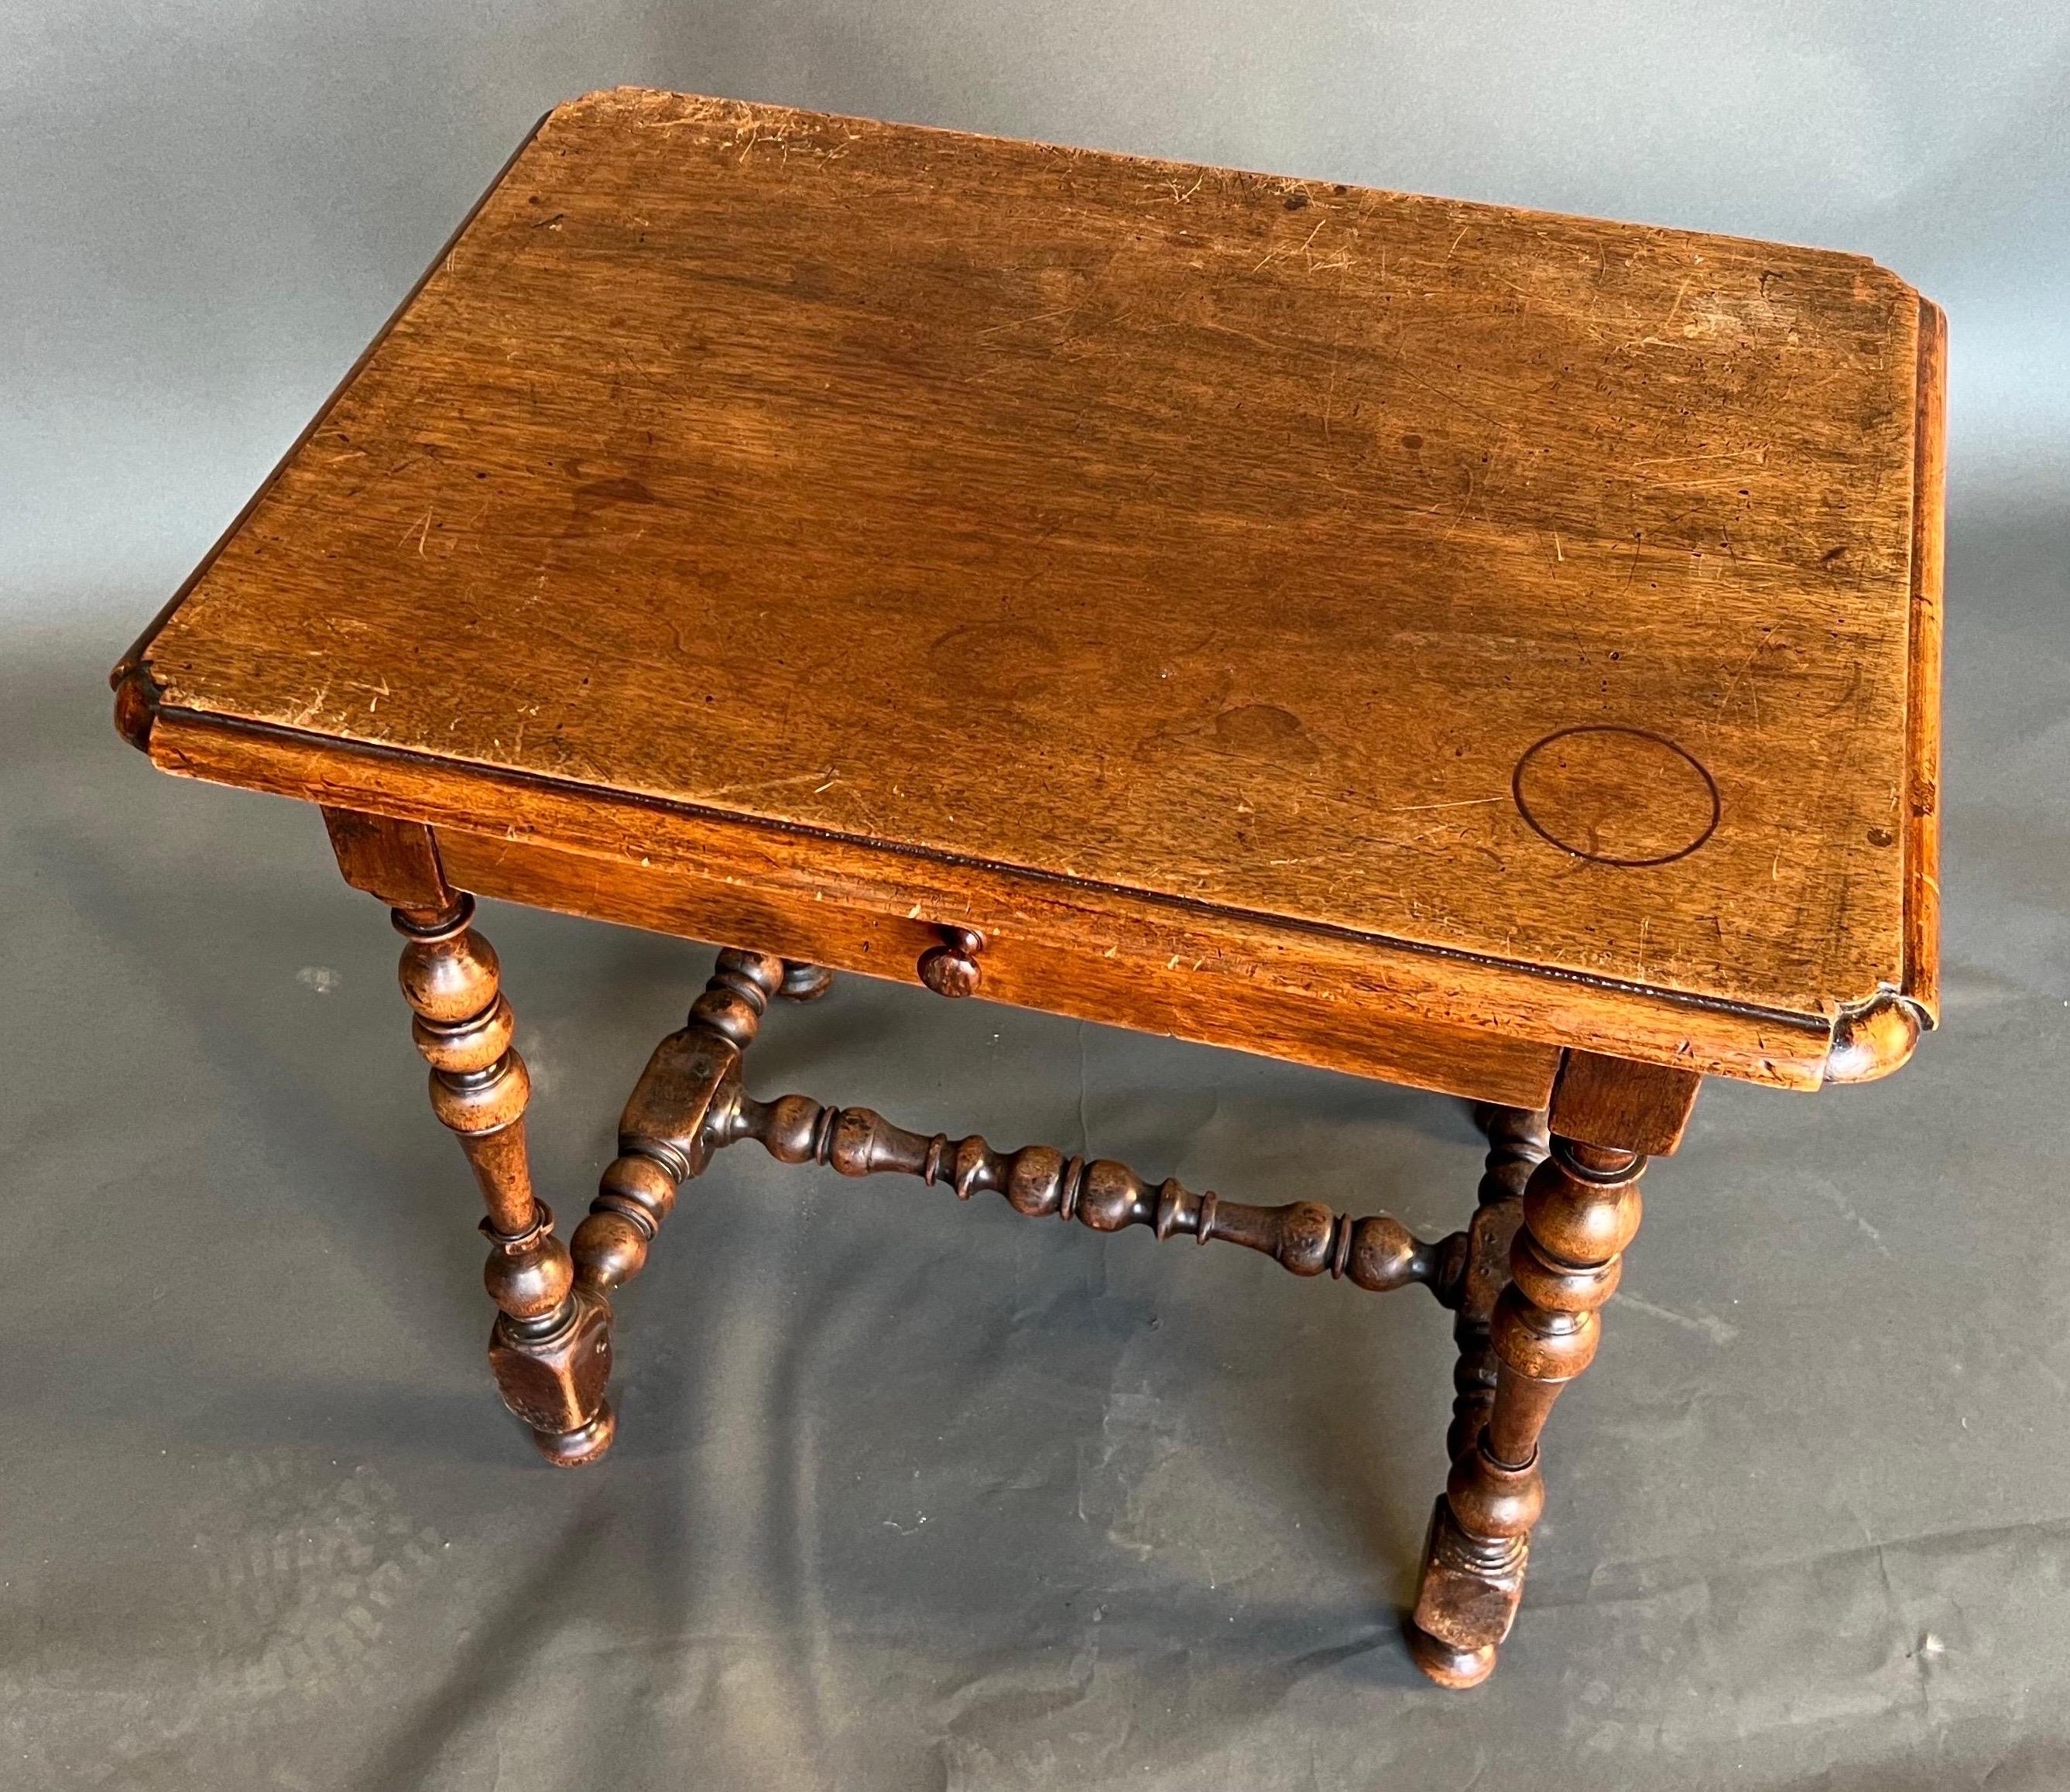 Jolie petite table d'appoint en noyer français du 19e siècle à un seul tiroir. Superbe couleur et patine. Jambes tournées et construction épinglée. Grande taille permettant de l'utiliser dans divers endroits.